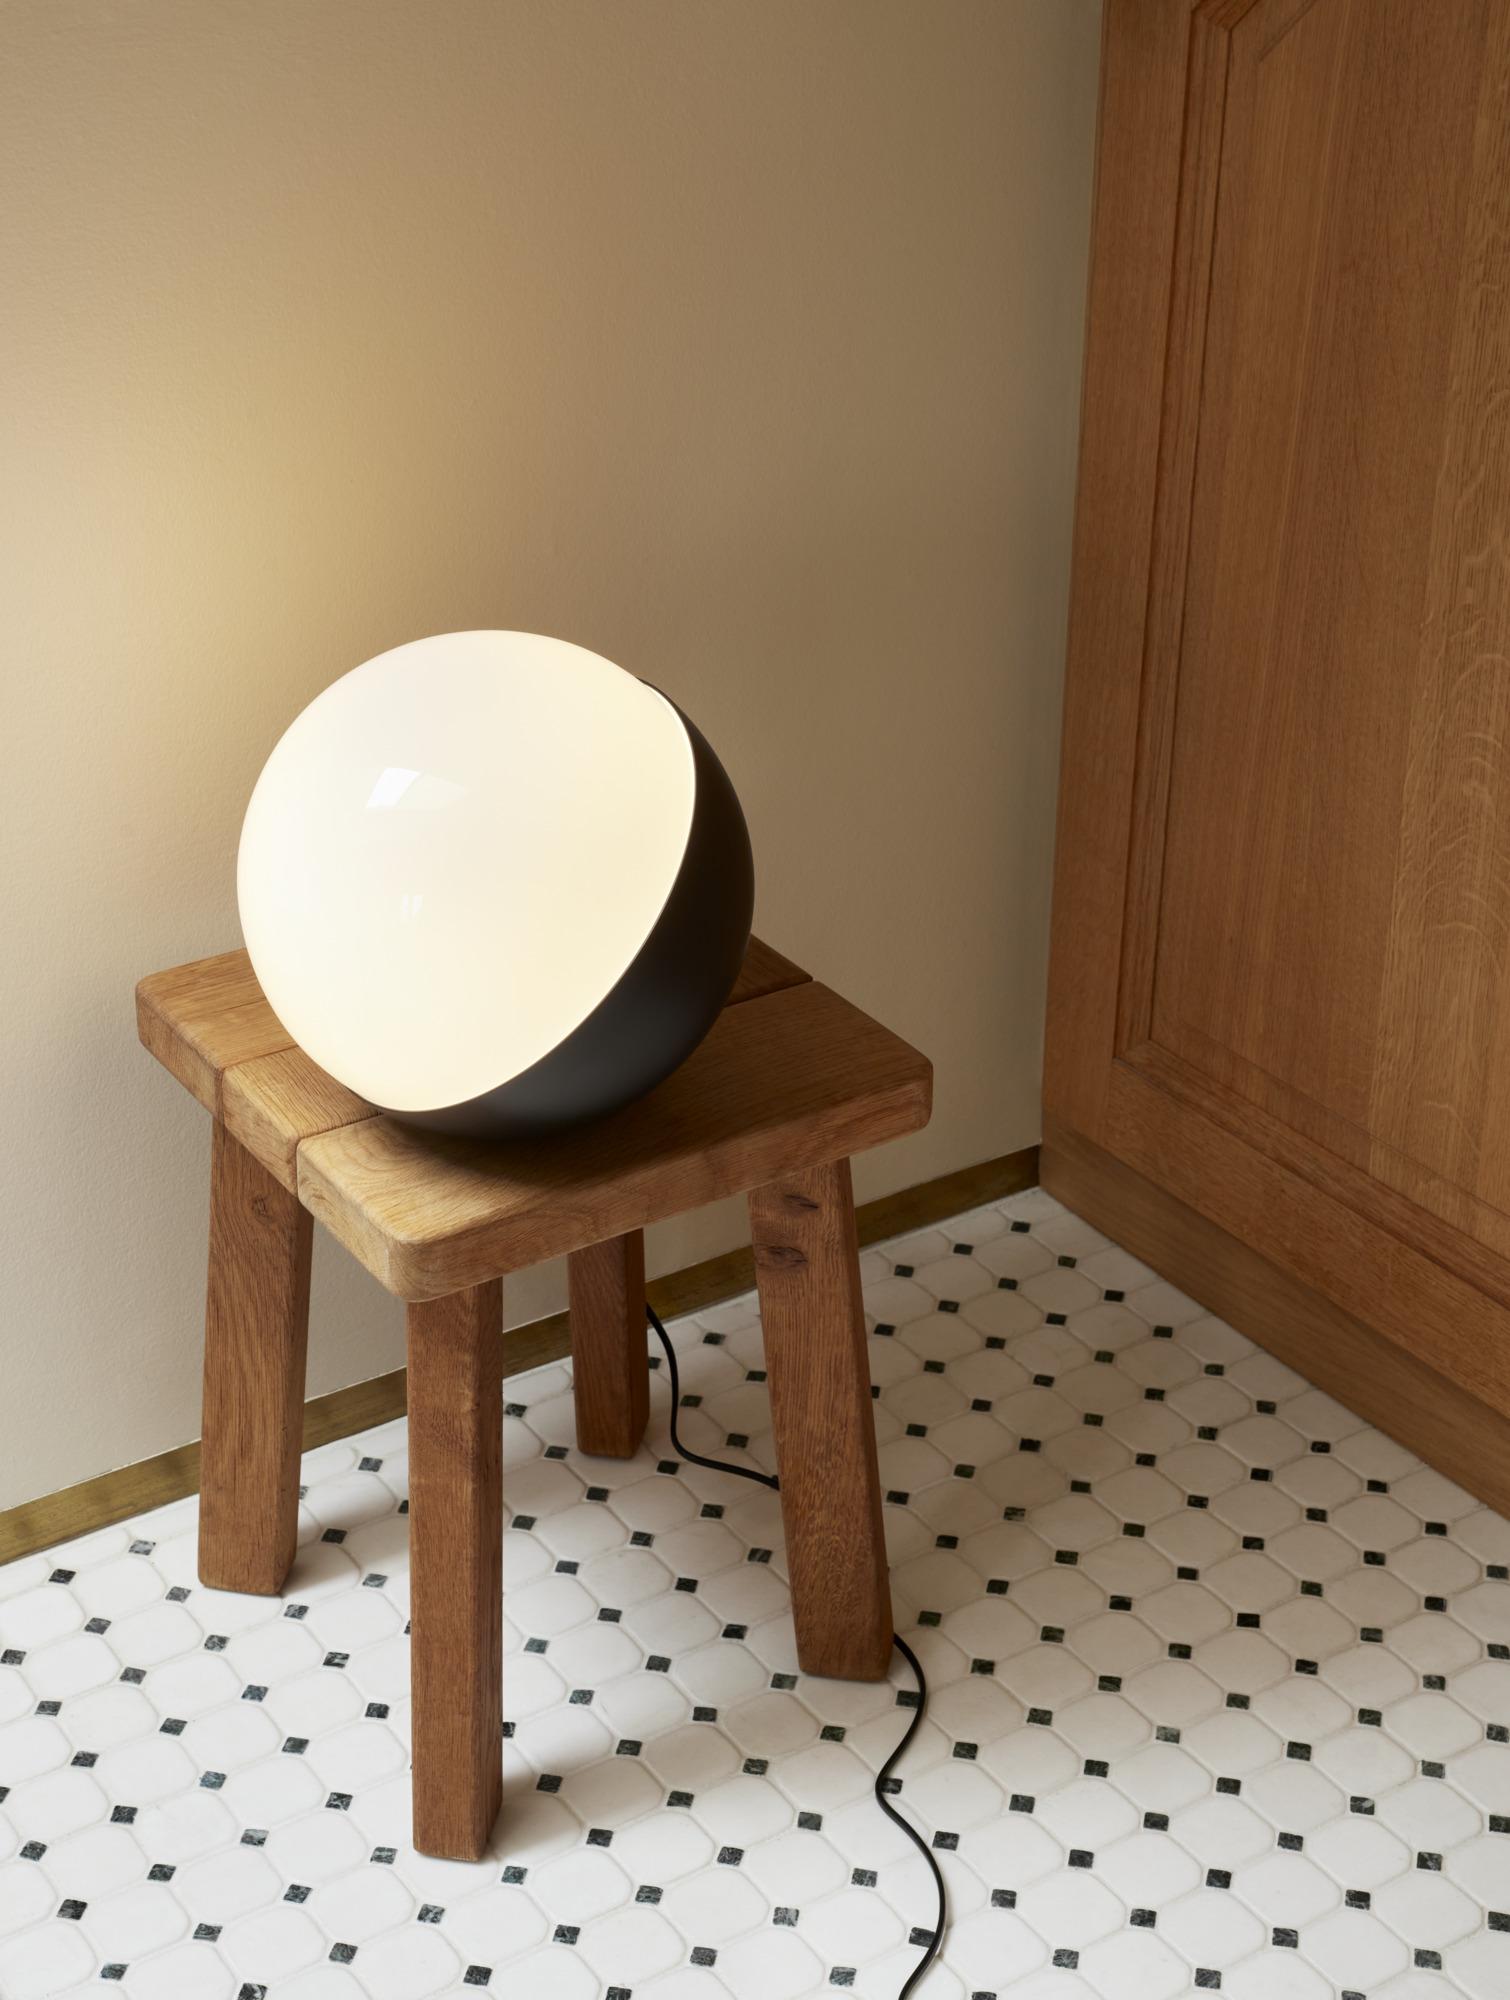 Lampe de table en métal et verre Vilhelm Lauritzen 'VL Studio' pour Louis Poulsen.

Cette lampe de table innovante s'inspire de l'applique de studio originale de Lauritzen pour Radiohuset, qui indiquait par une lumière rouge ou verte si le studio